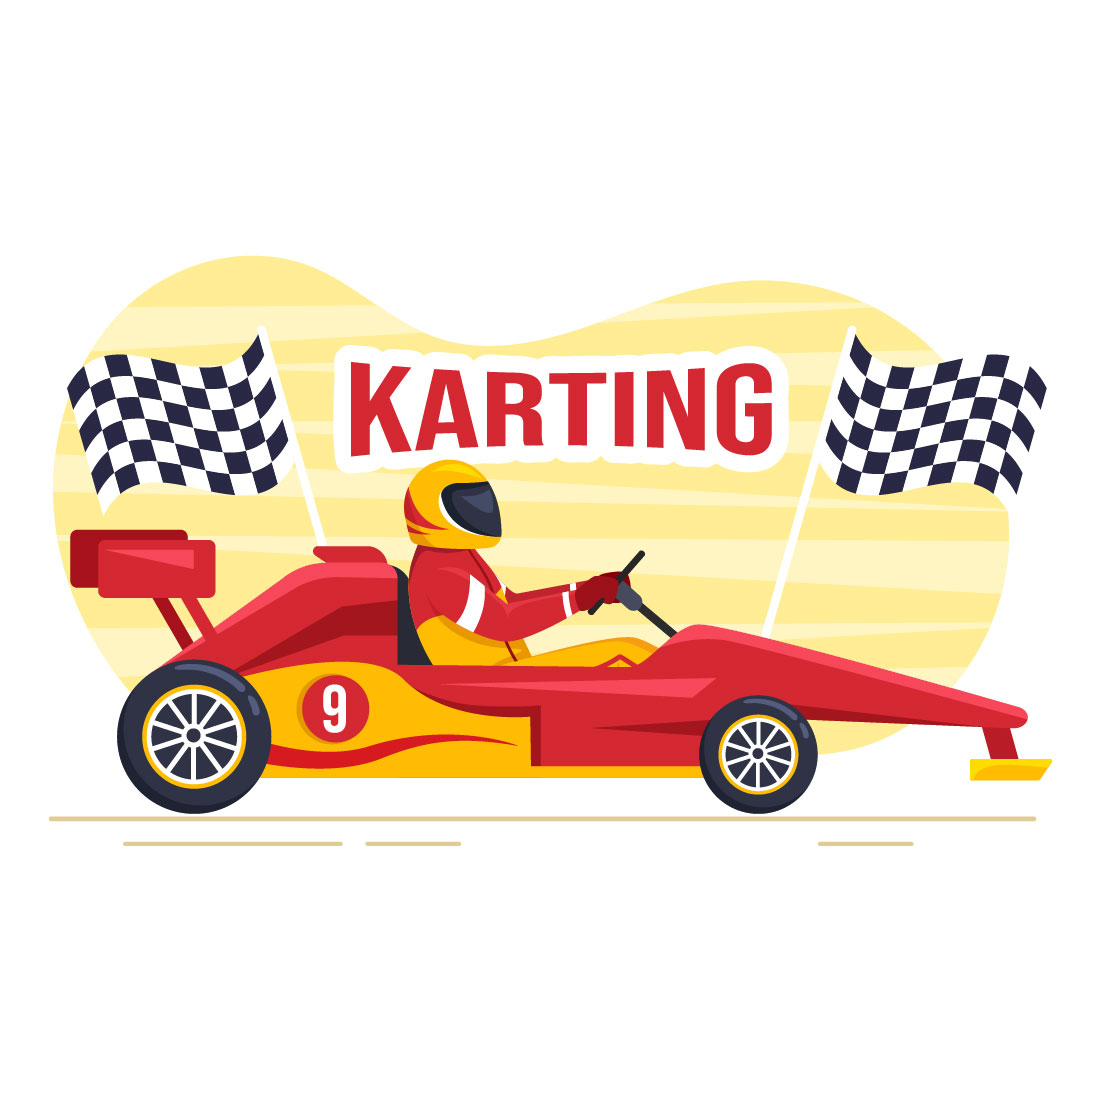 Karting Sport Illustration cover image.